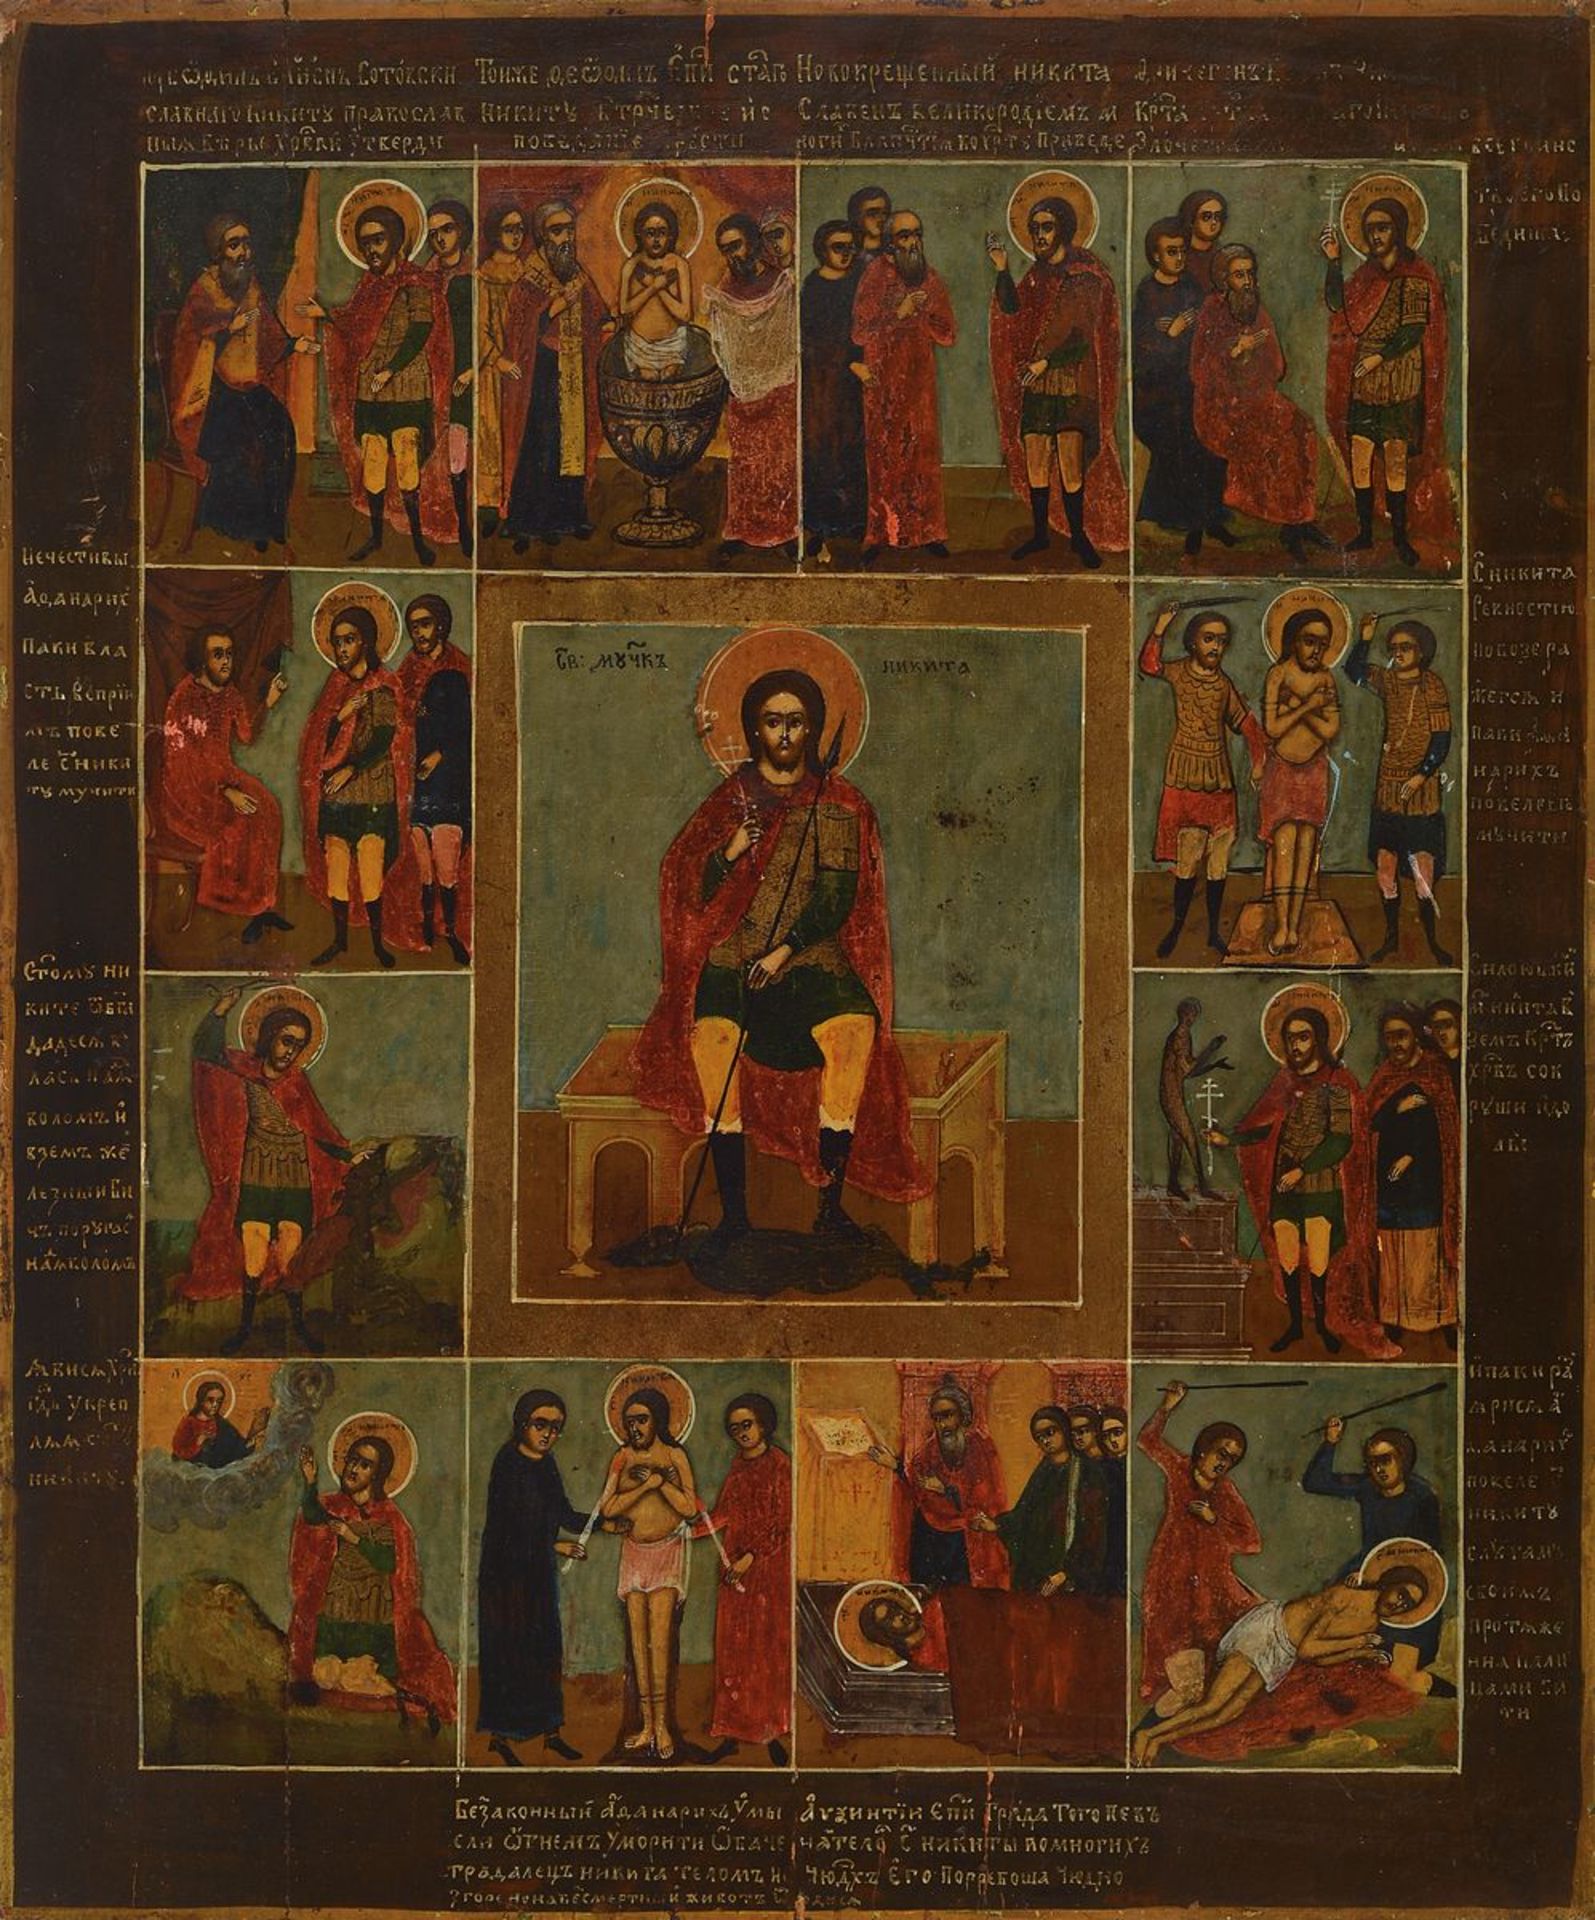 Große Ikone, Russland, 2. Hälfte 19. Jh., Tempera auf Holz, mittig Christusdarstellung umgeben von